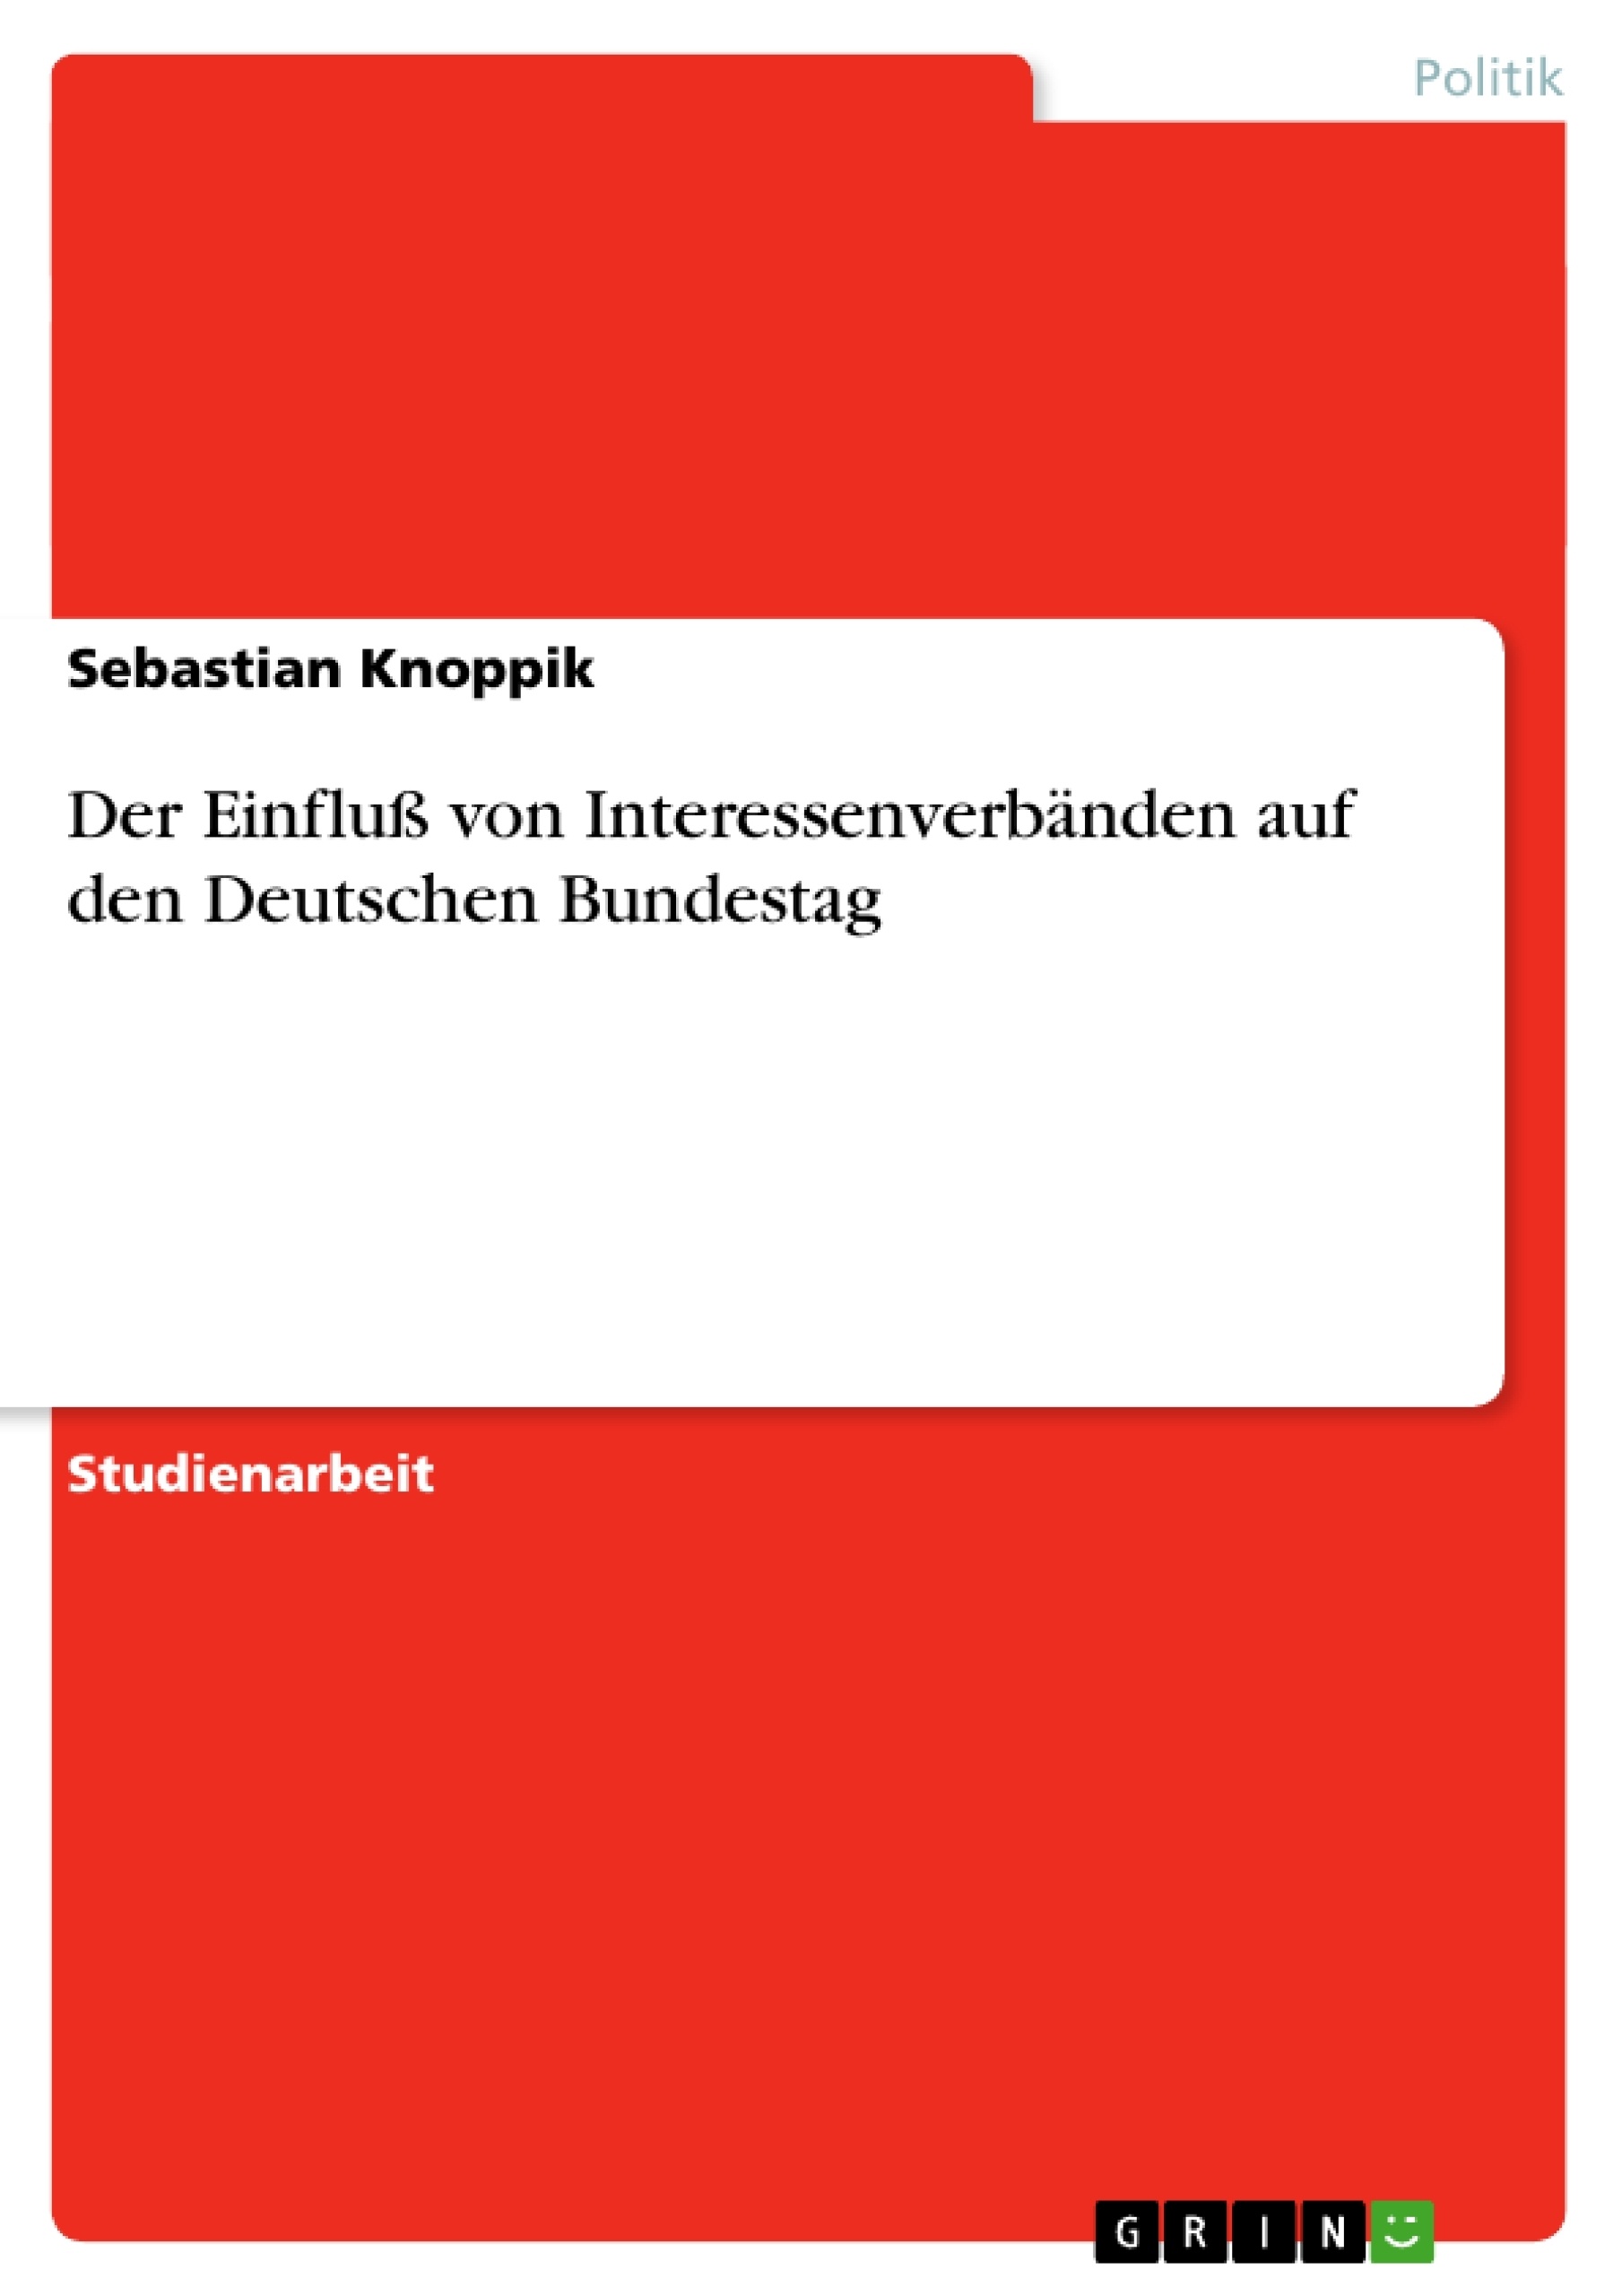 Título: Der Einfluß von Interessenverbänden auf den Deutschen Bundestag